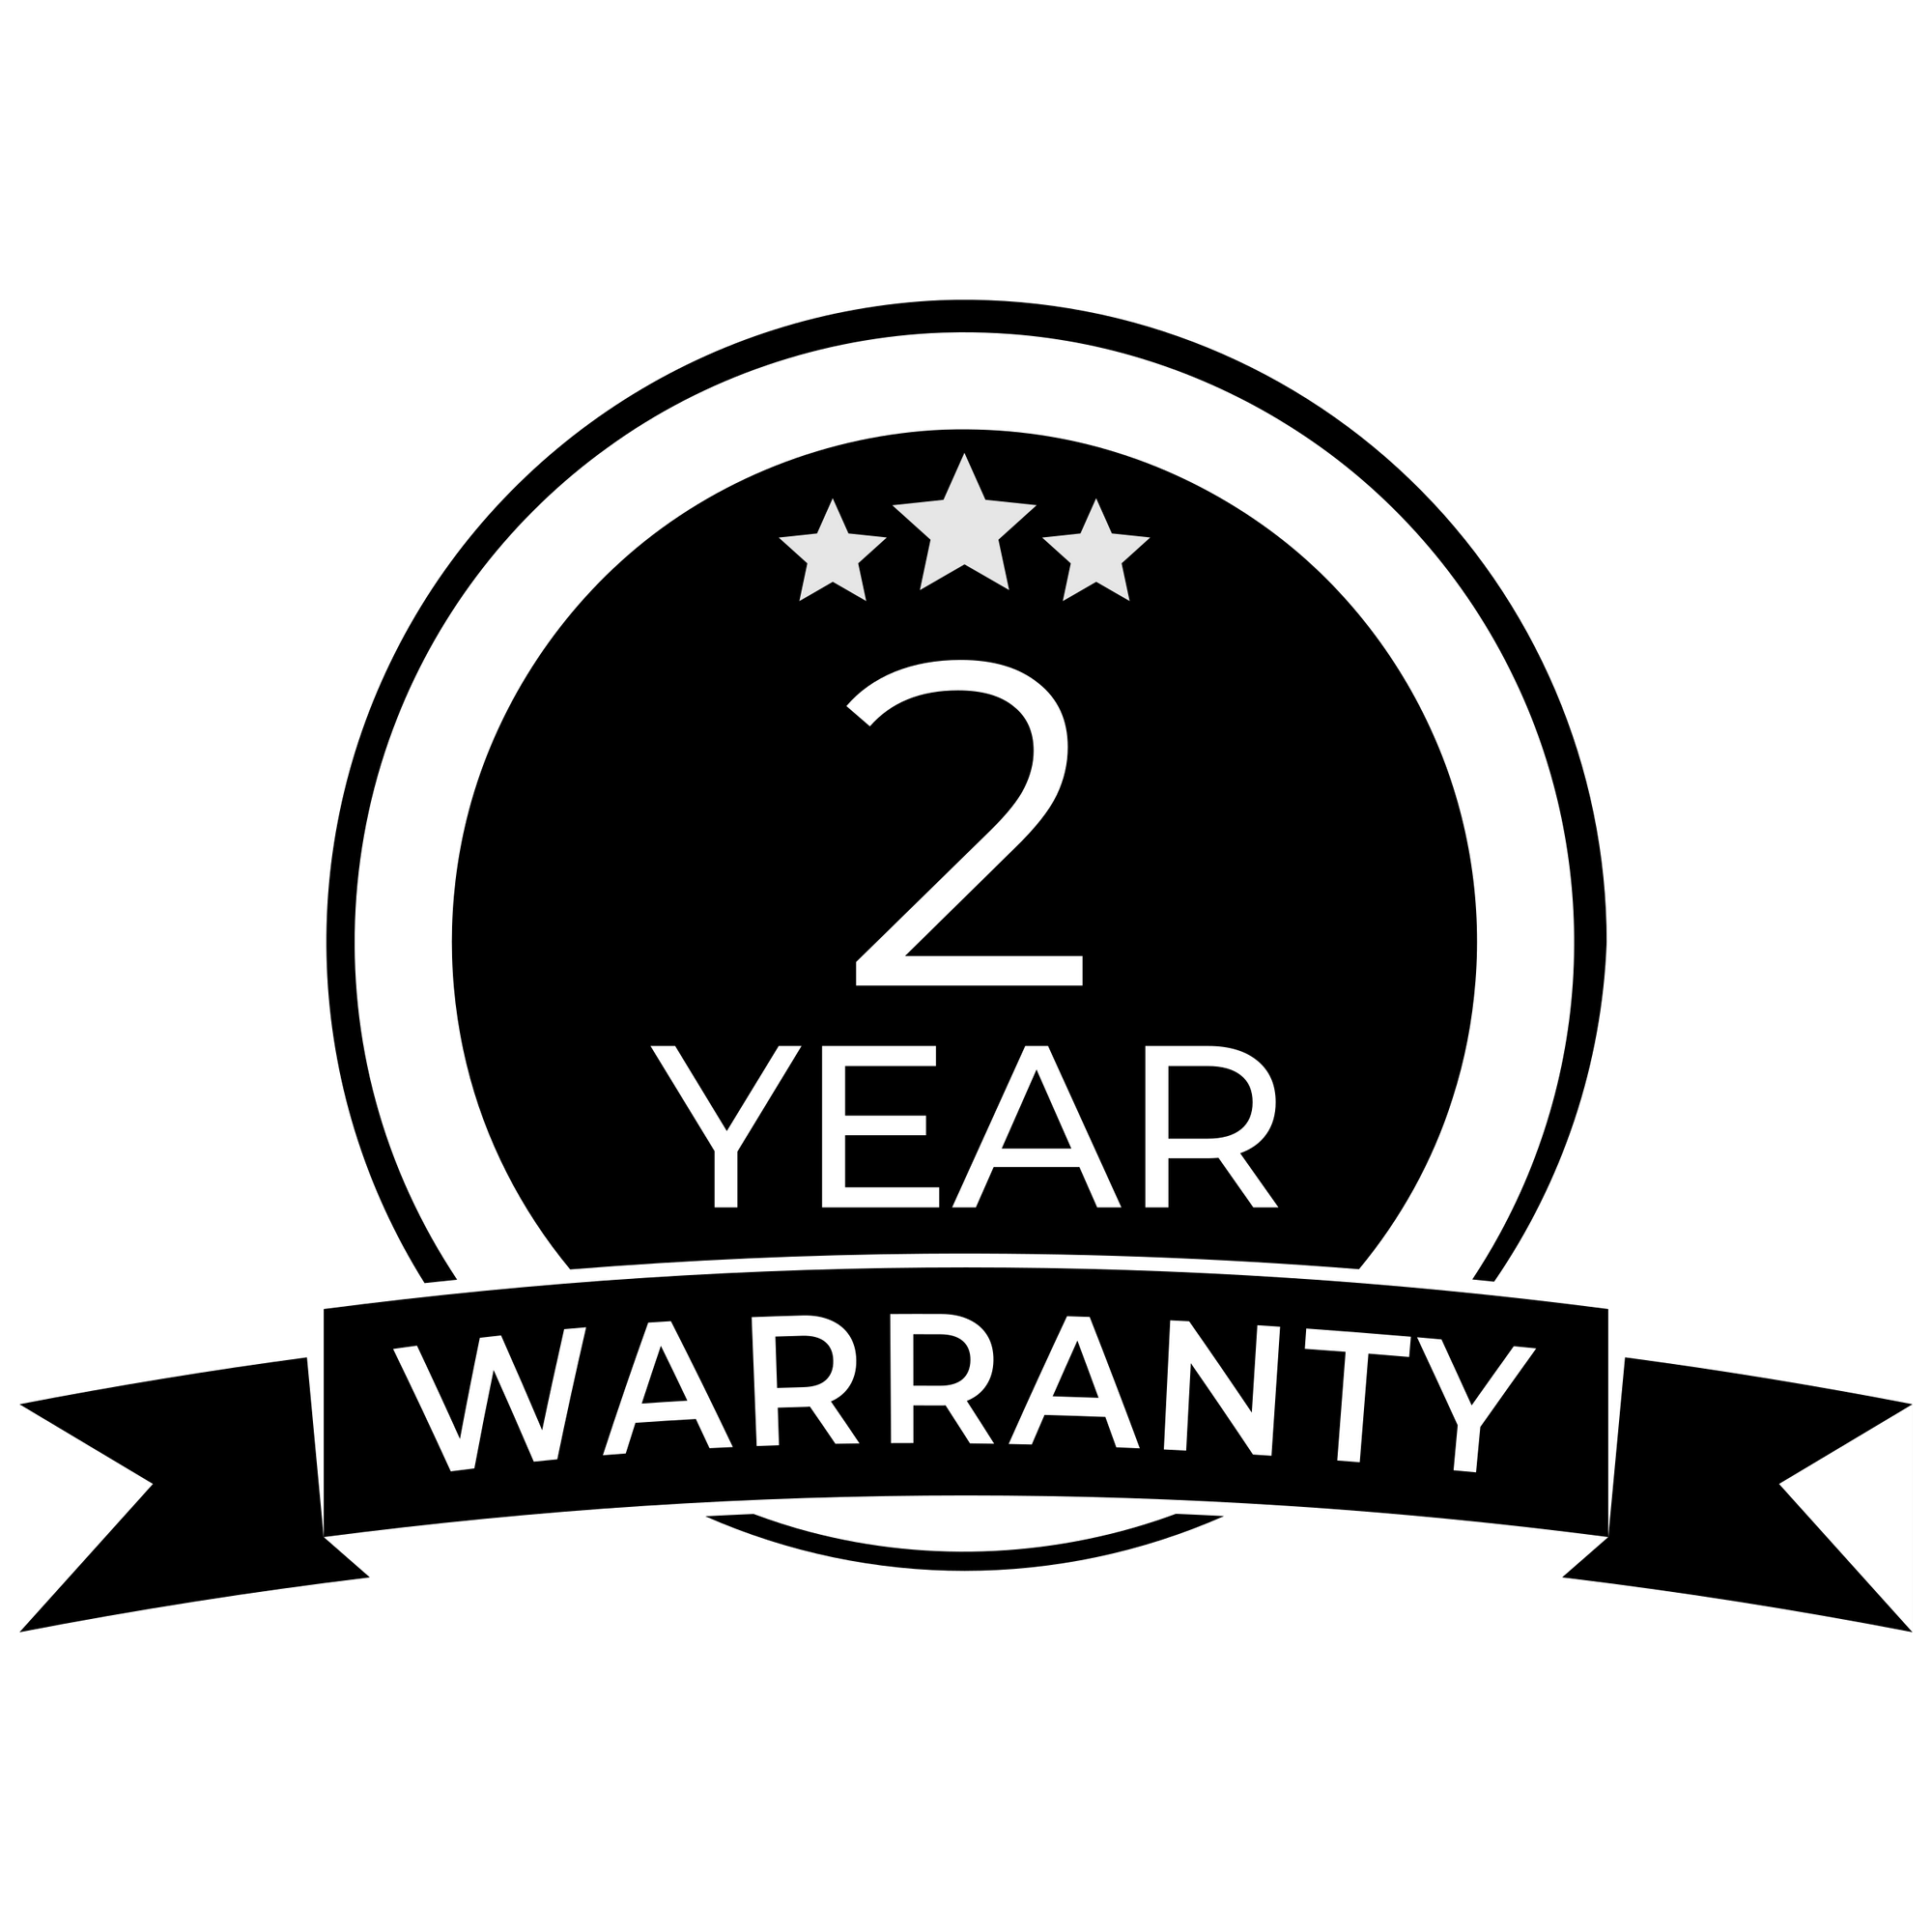 Extended LGear Warranty